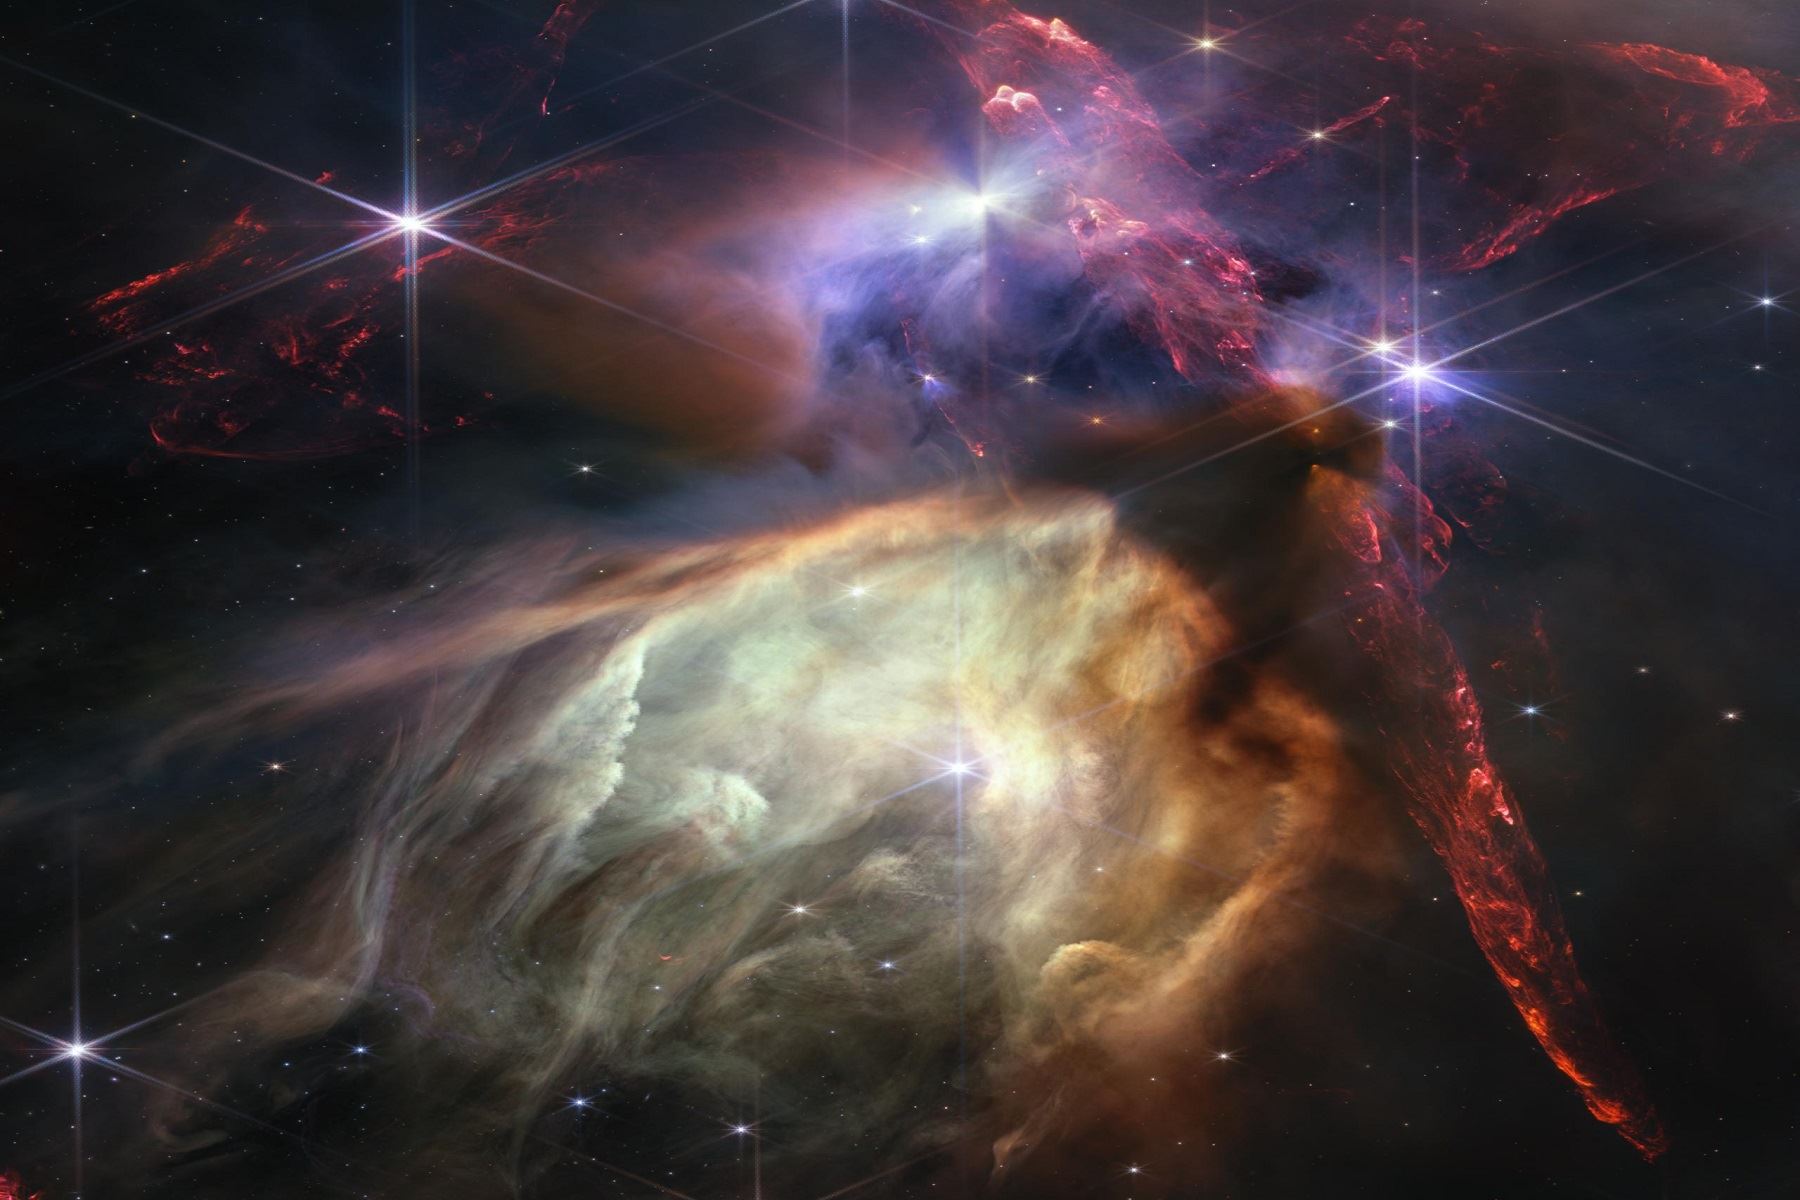 En solo un año, el telescopio espacial James Webb ha transformado la visión de la humanidad acerca del cosmos, asomándose dentro de las nubes de polvo y observando por primera vez la luz proveniente de rincones lejanos del universo. Foto: NASA